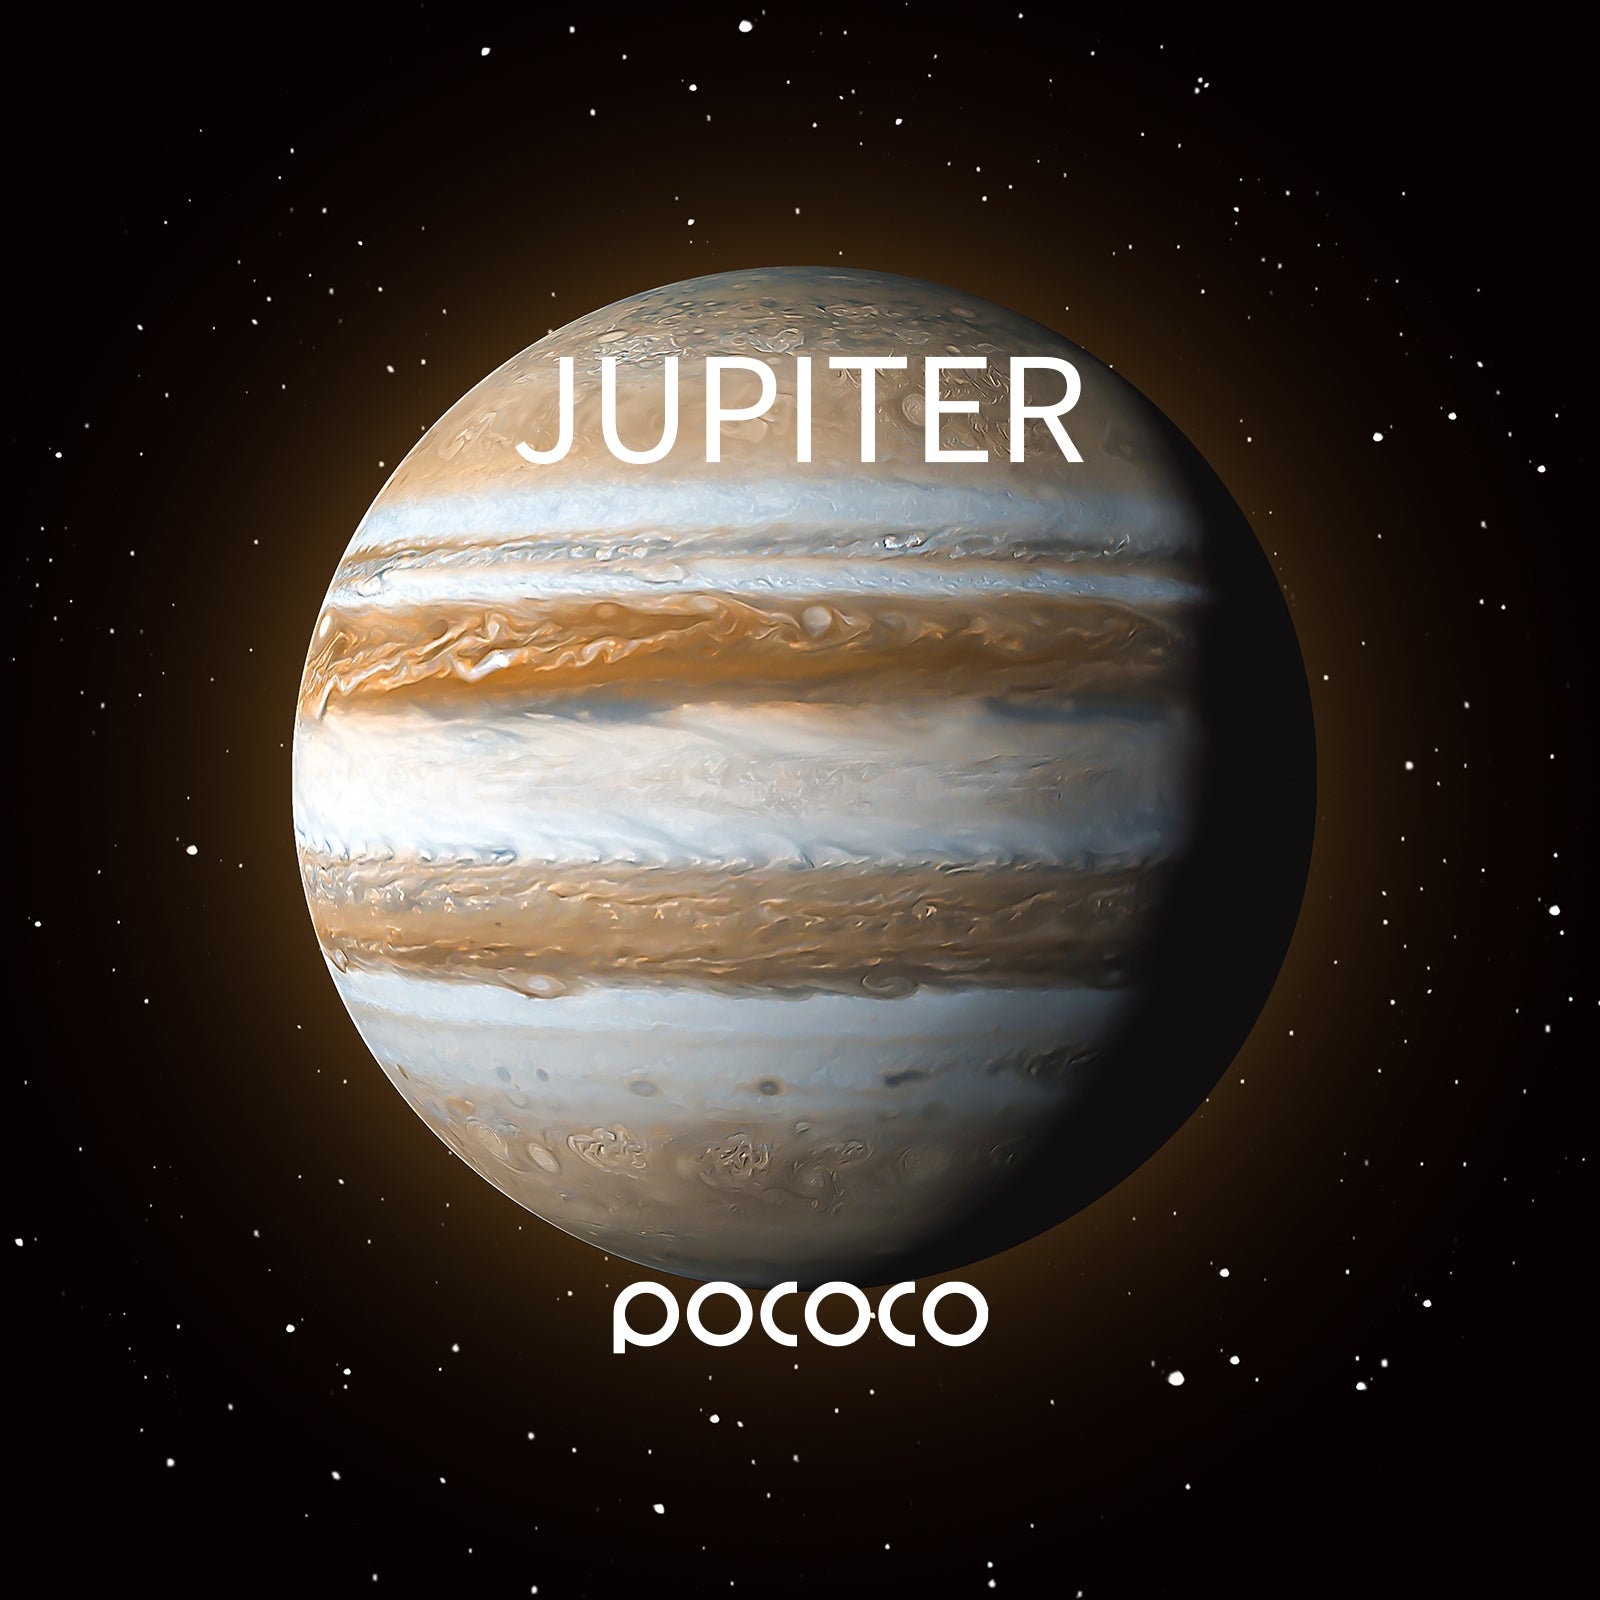 POCOCO Galaxy Projector Disc - Jupiter